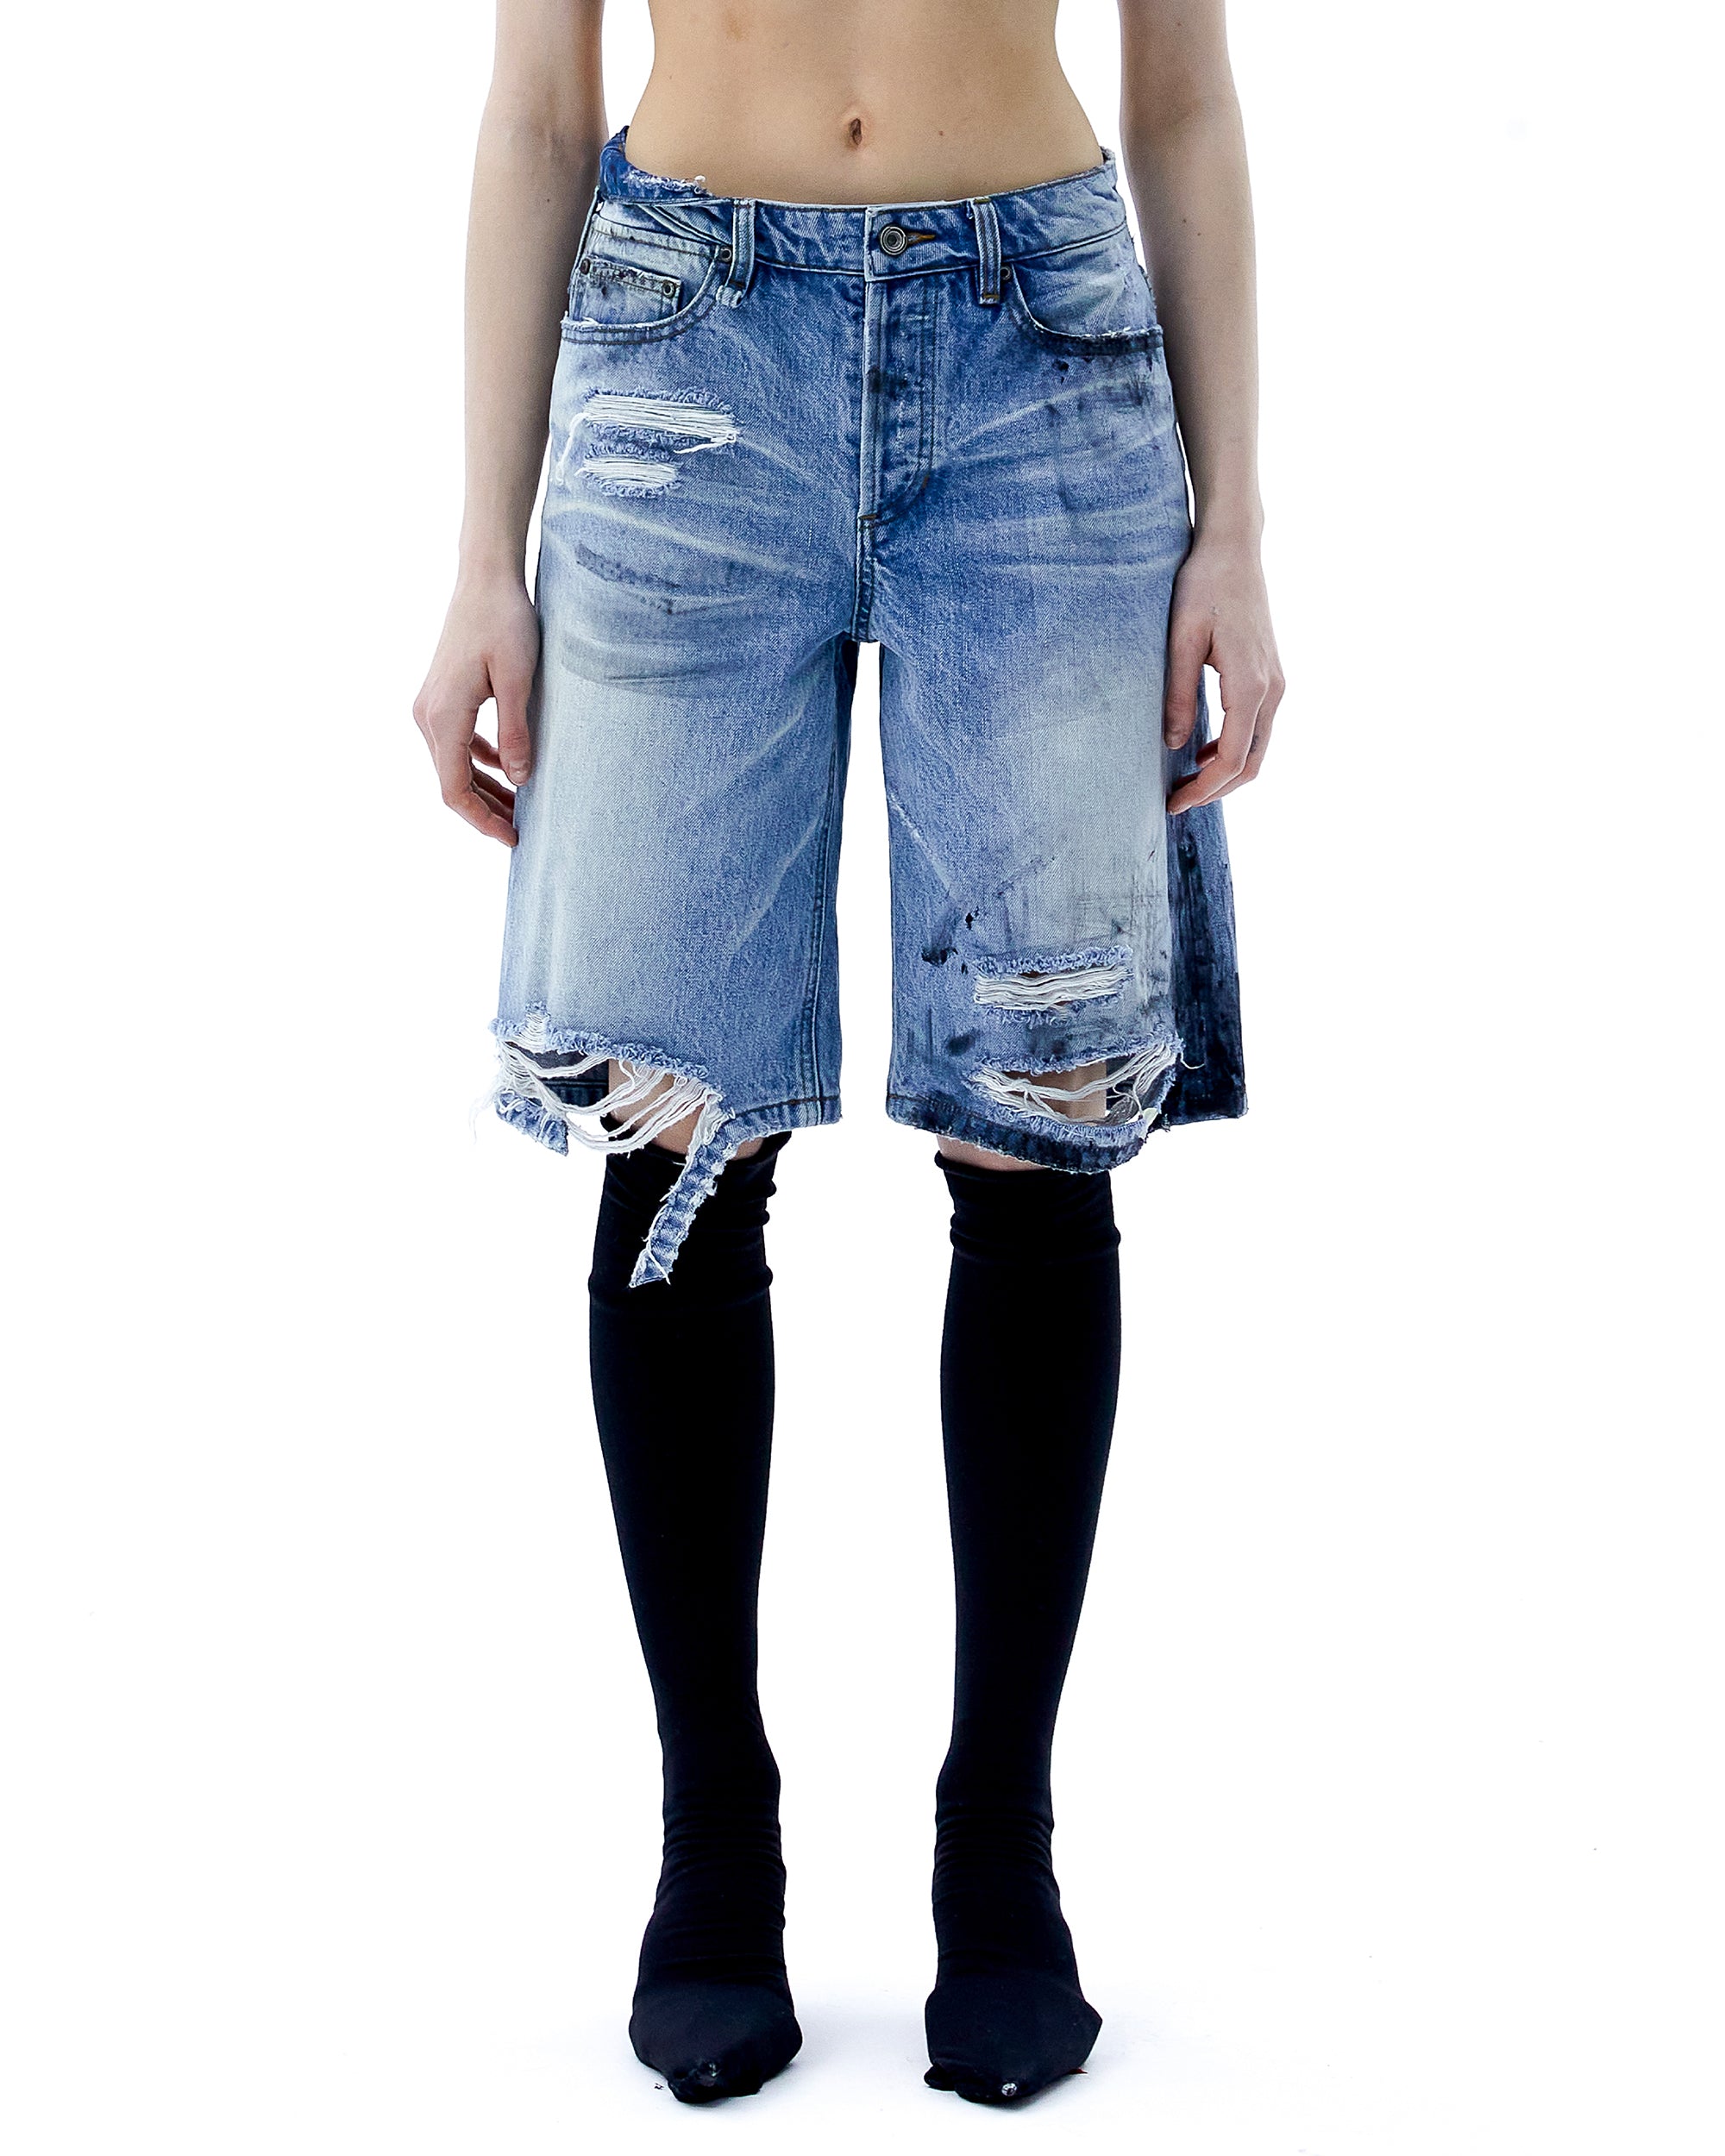 (ARIELLA) Dirty Denim Shorts